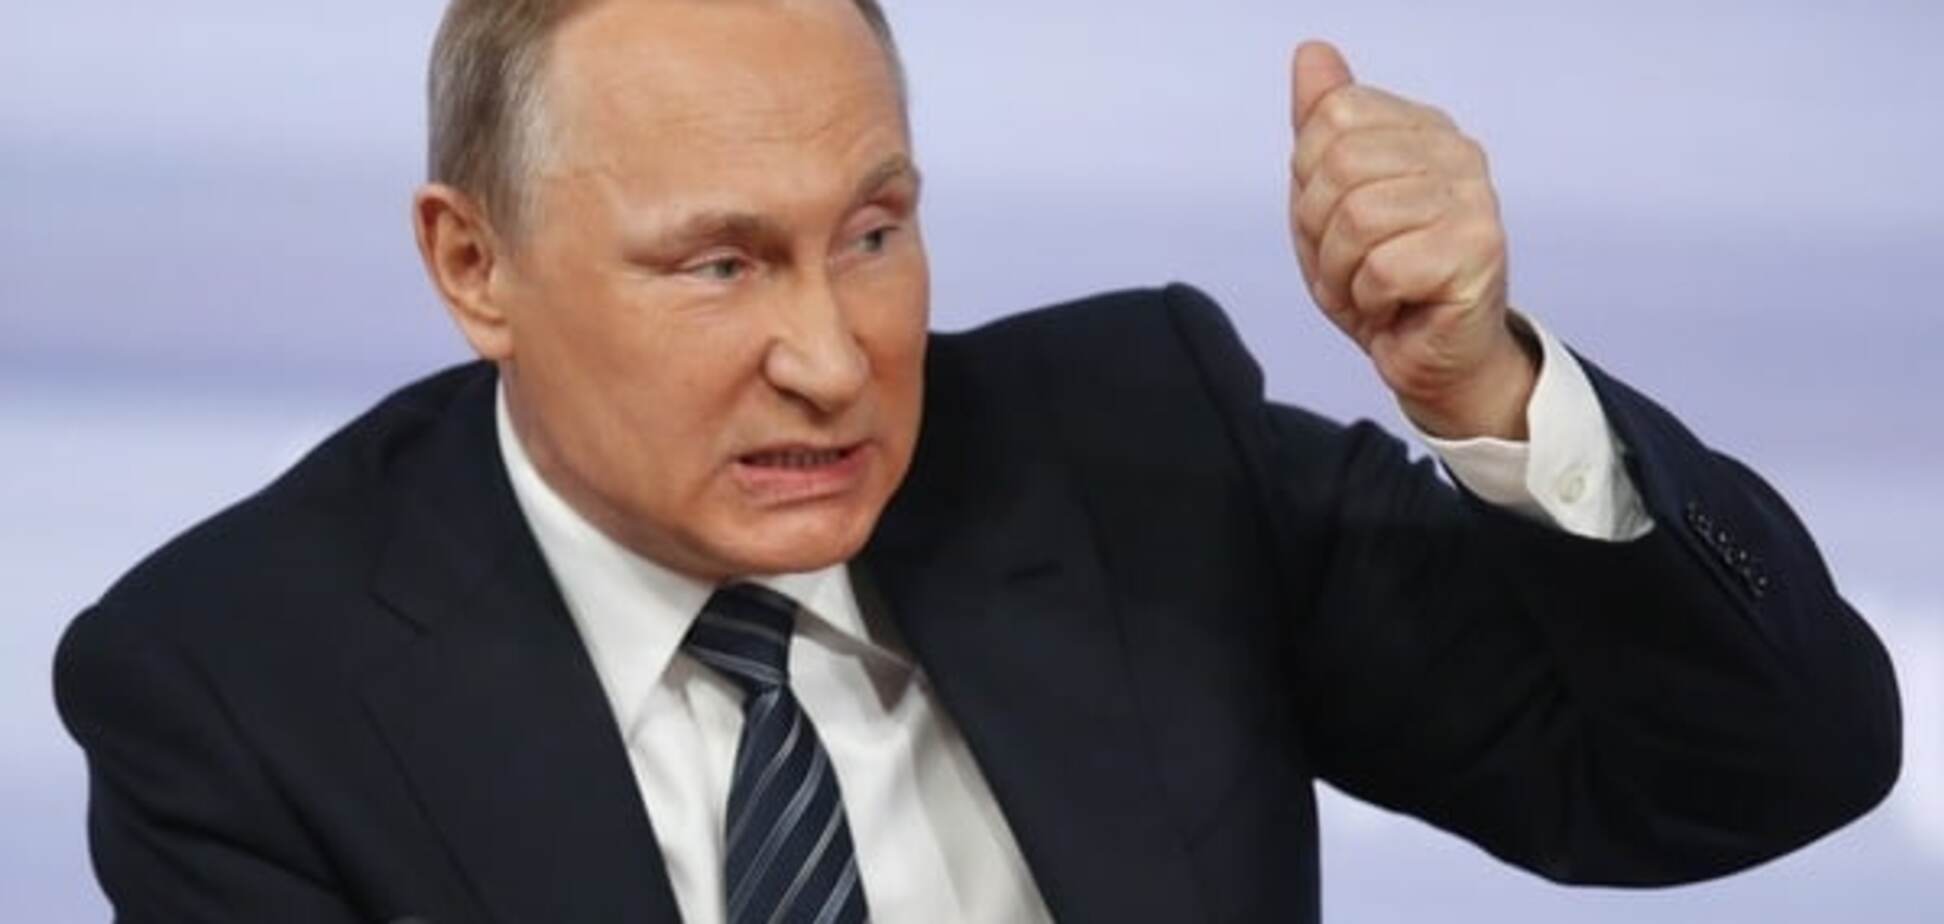 Путин может управлять Россией только с помощью убийств - New York Post